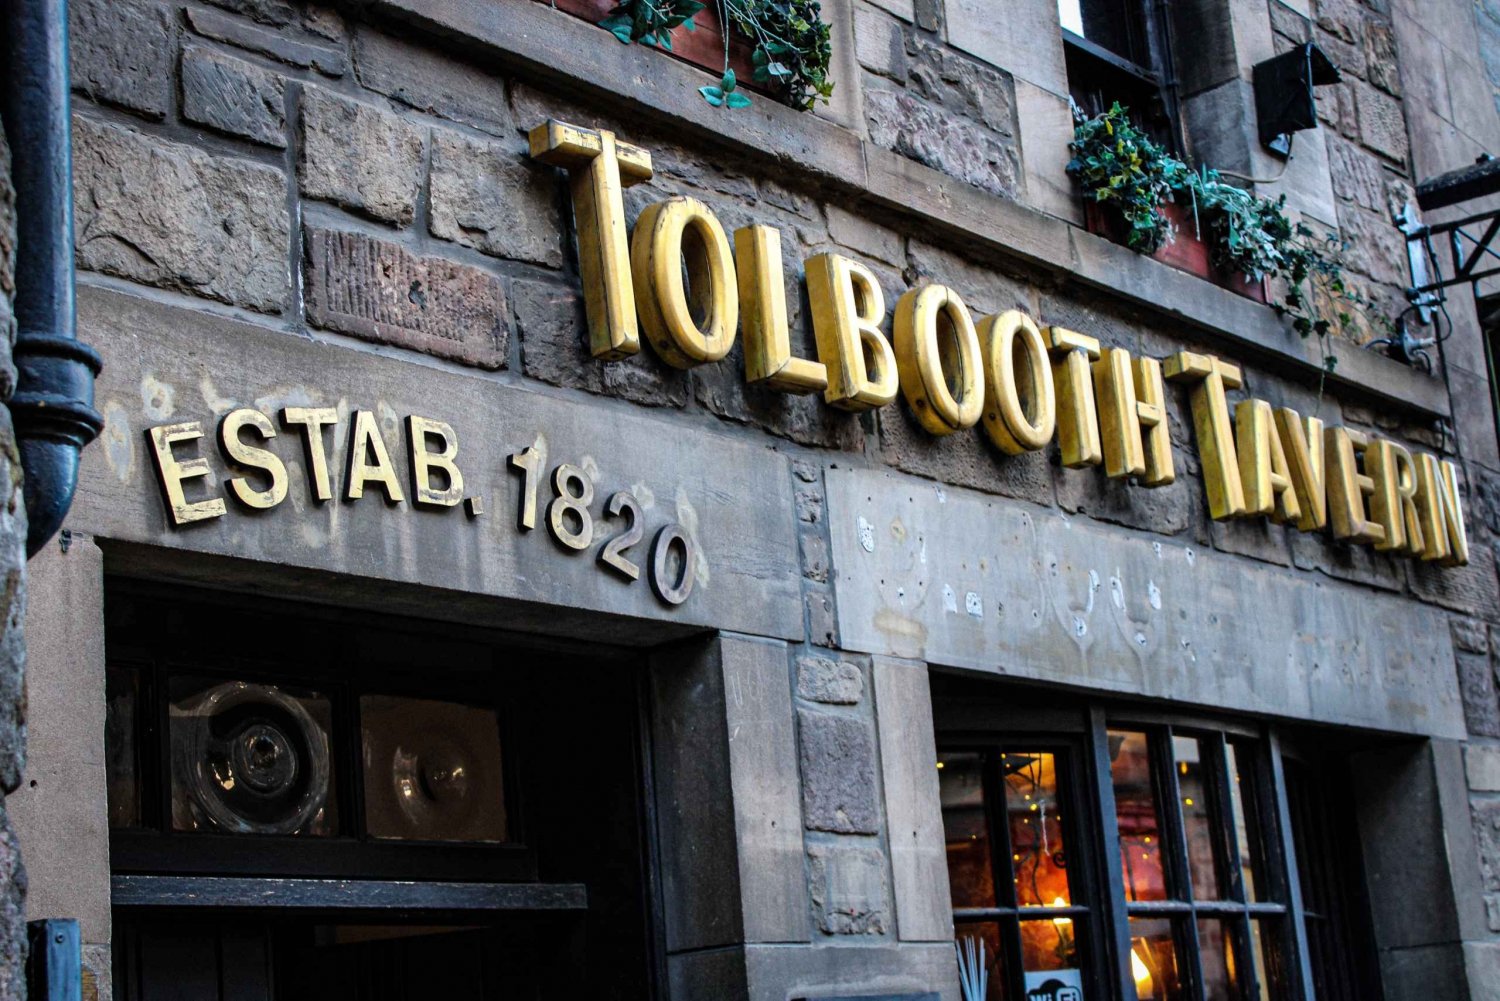 Edinburgh: The Tolbooth Tavern -ravintolassa: Skotlantilainen maistelulautanen